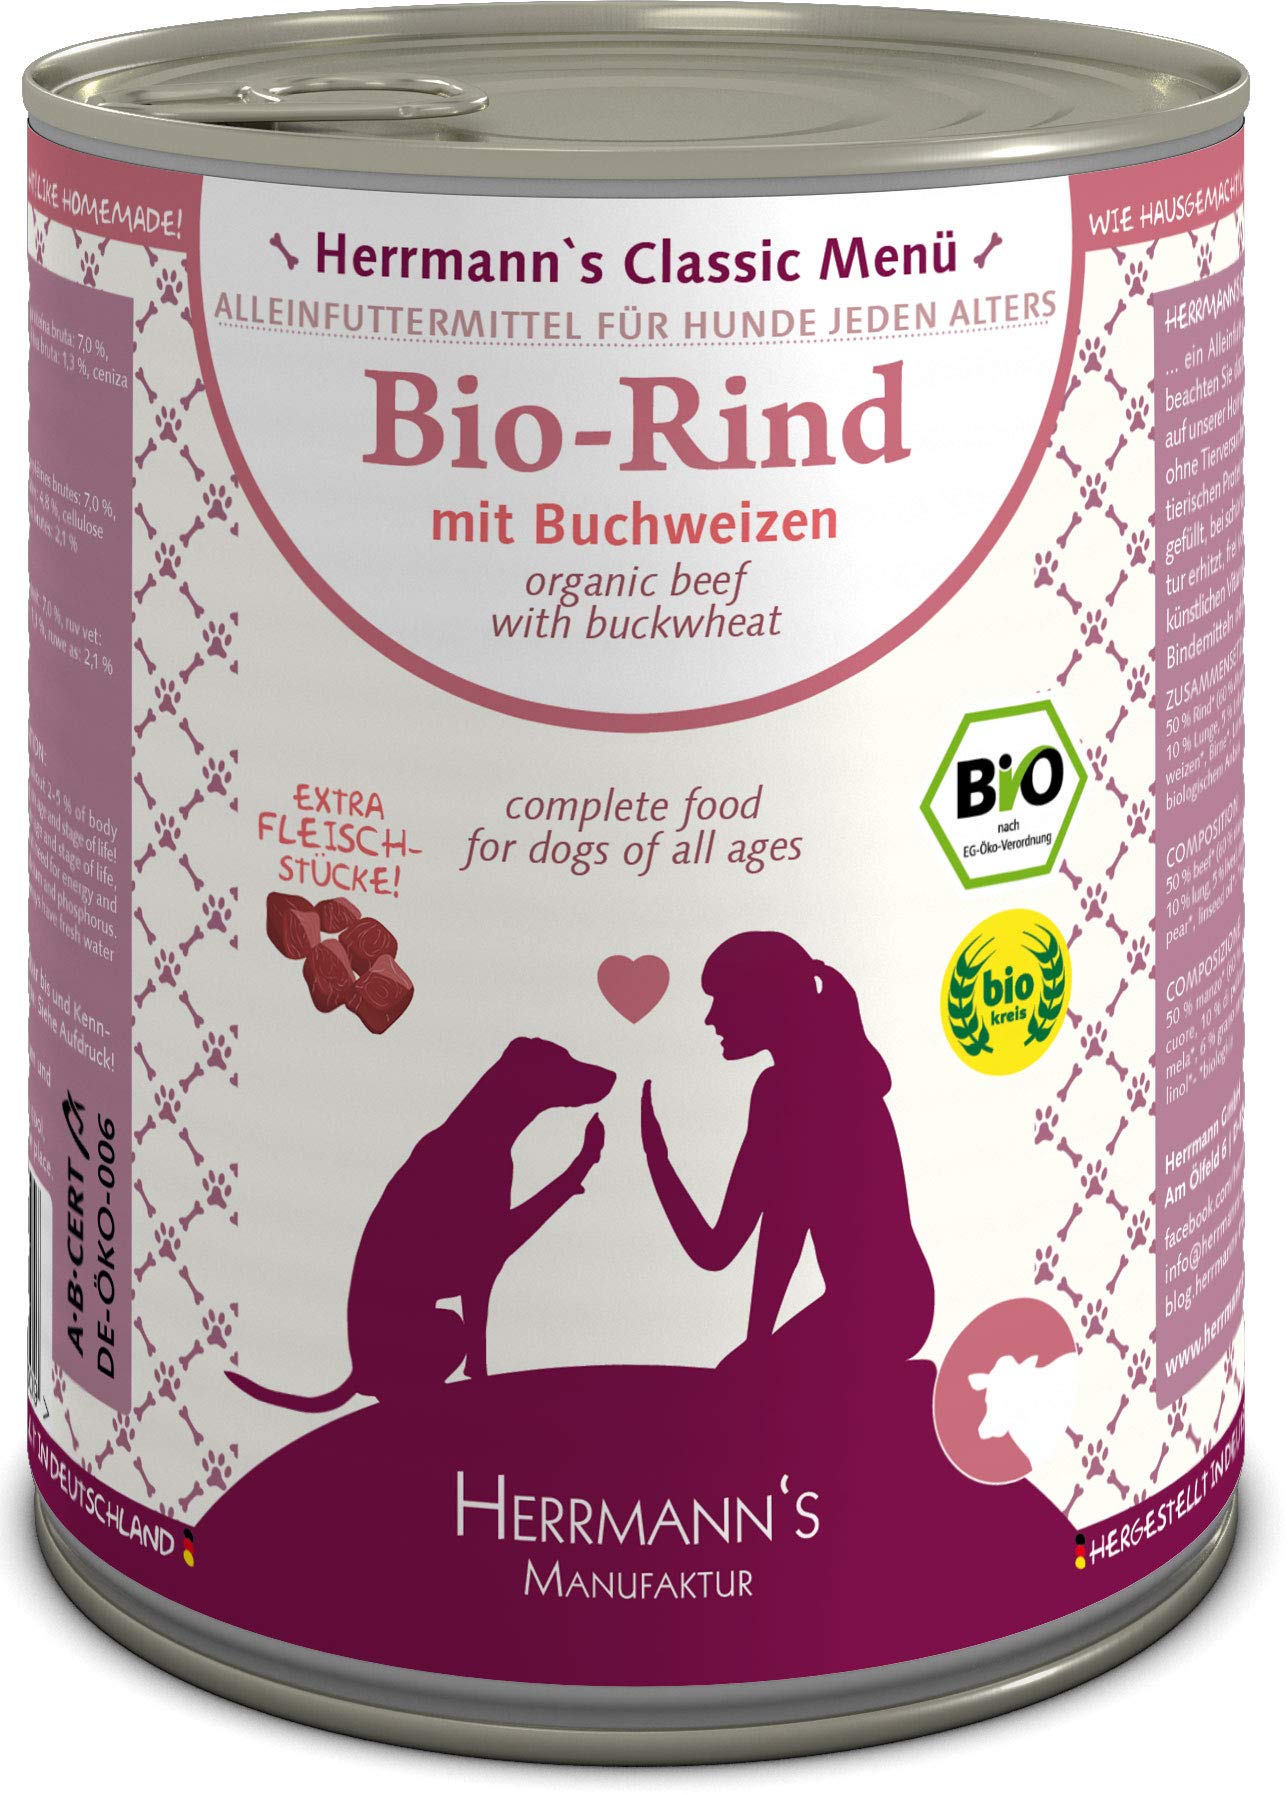 Herrmanns Bio Hundefutter Rind Menu 1 mit Buchweizen, Apfel, Birne 800 g, 6er Pack (6 x 800 g)